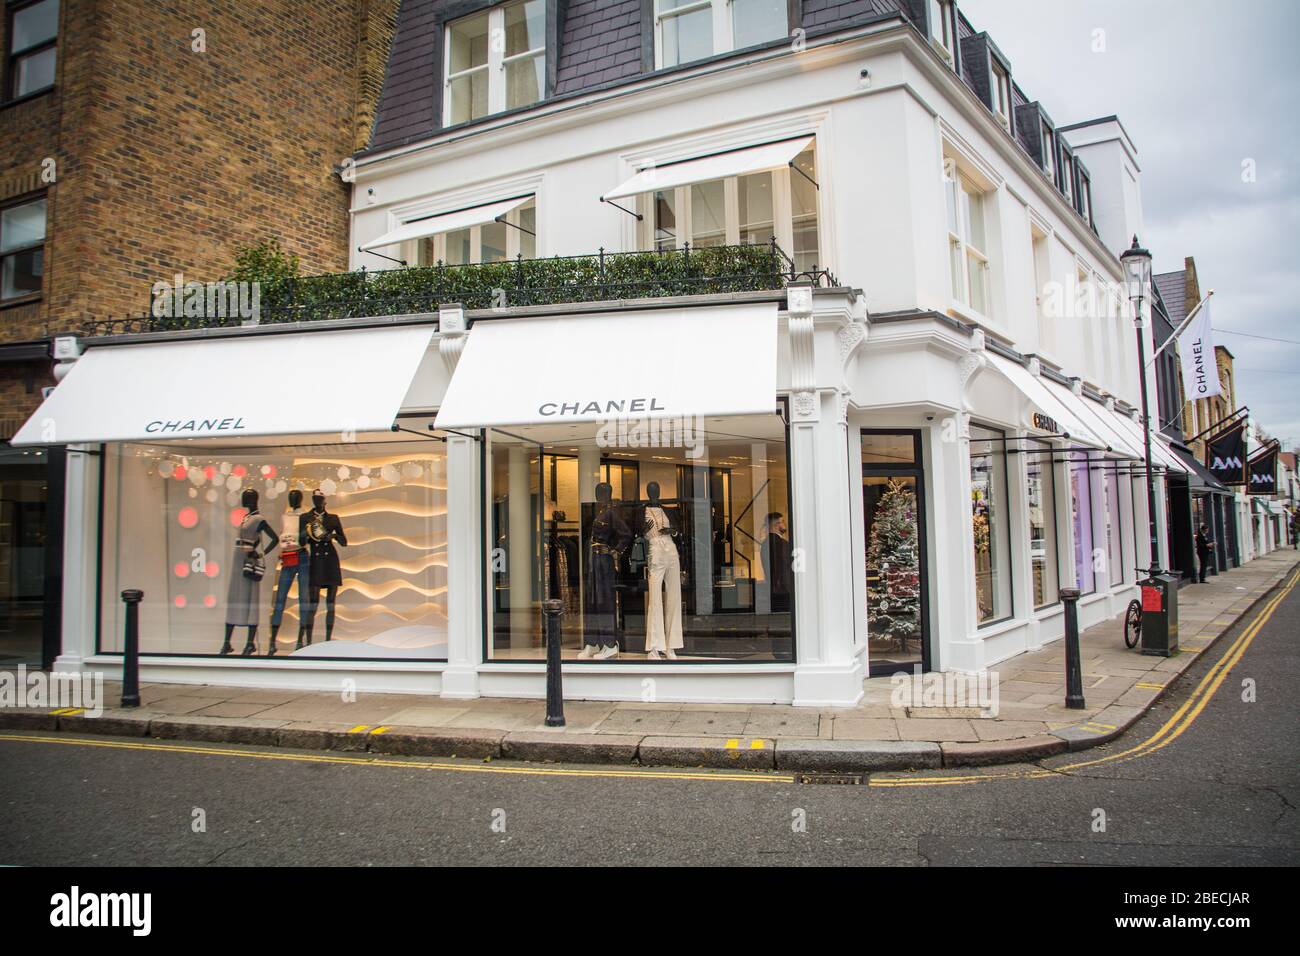 LONDRA - DICEMBRE 2018: Chanel negozio di moda designer su Walton Street a Chelsea & Kensington - un lussuoso marchio di moda francese Foto Stock